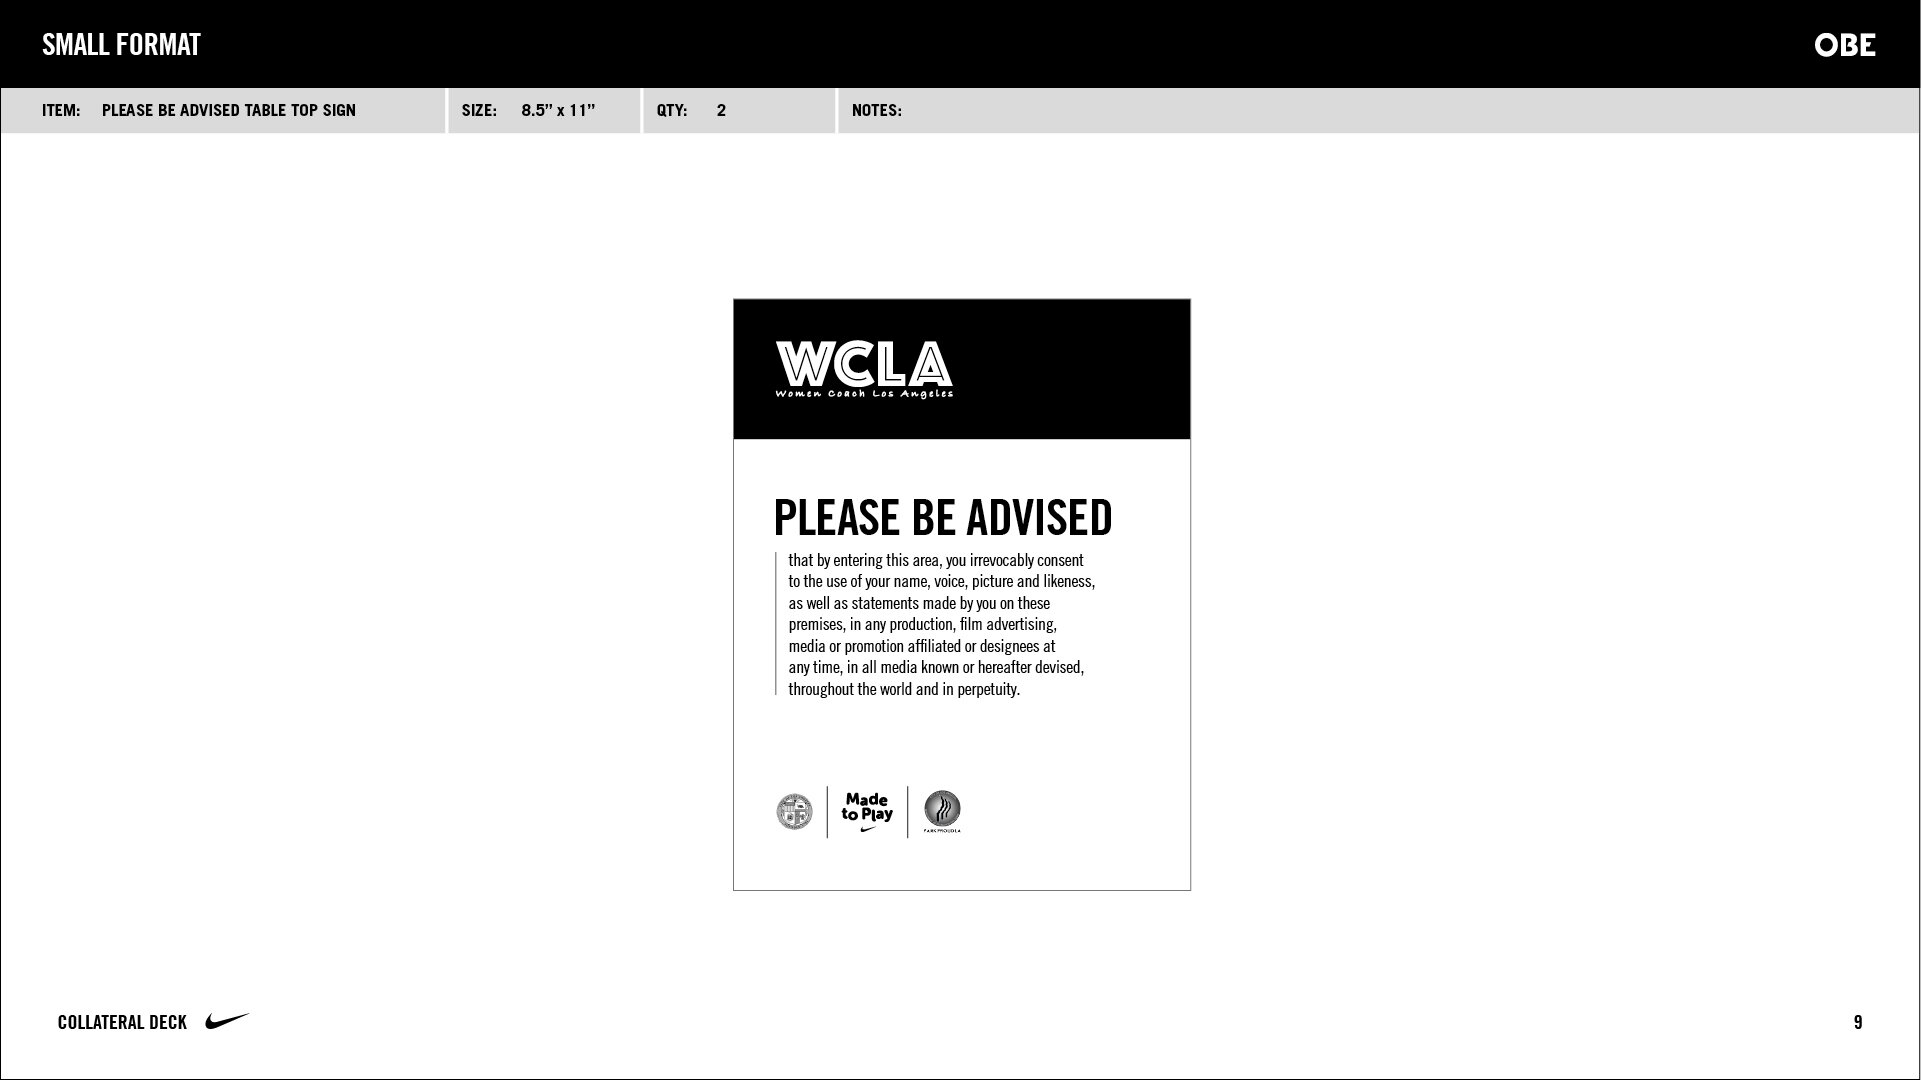 WCLA-190802-SoccerTraining2-CollateralDeck-R4_v11_FOR MY WEBSITE9.jpg